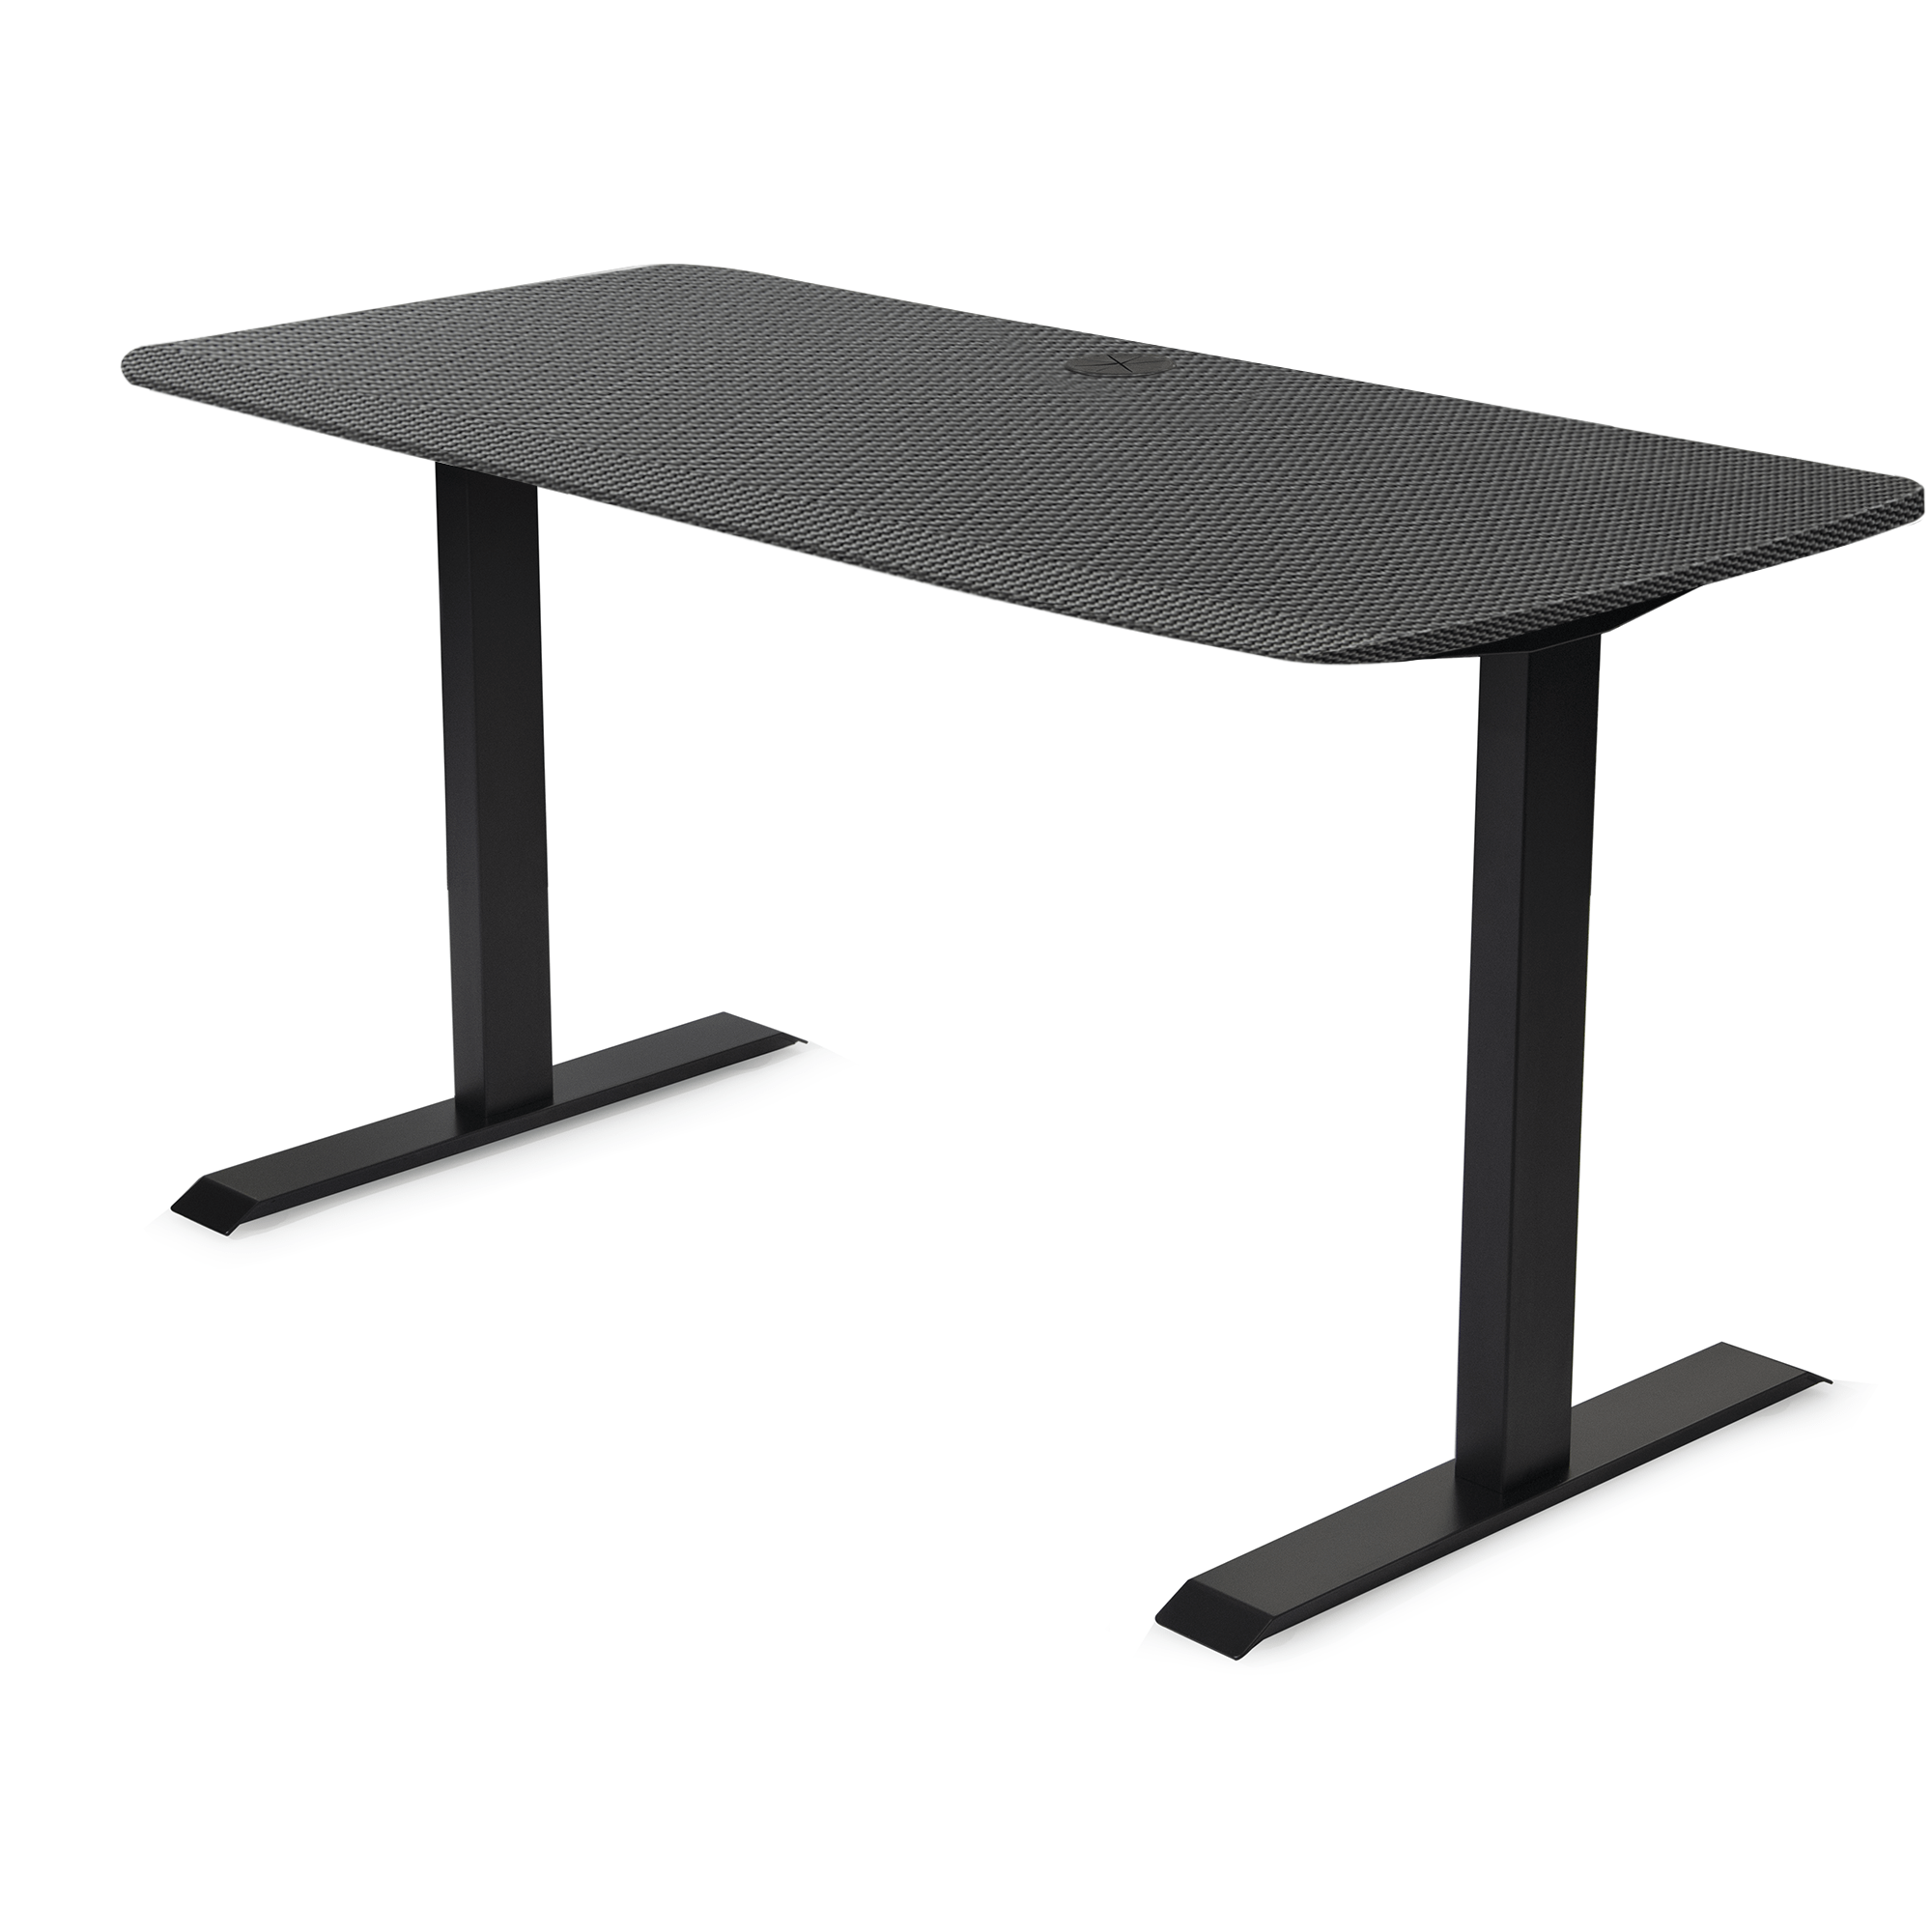 60x24 Side Table Fixed Height - Frame Color: Black - Desktop Color: Carbon Fiber